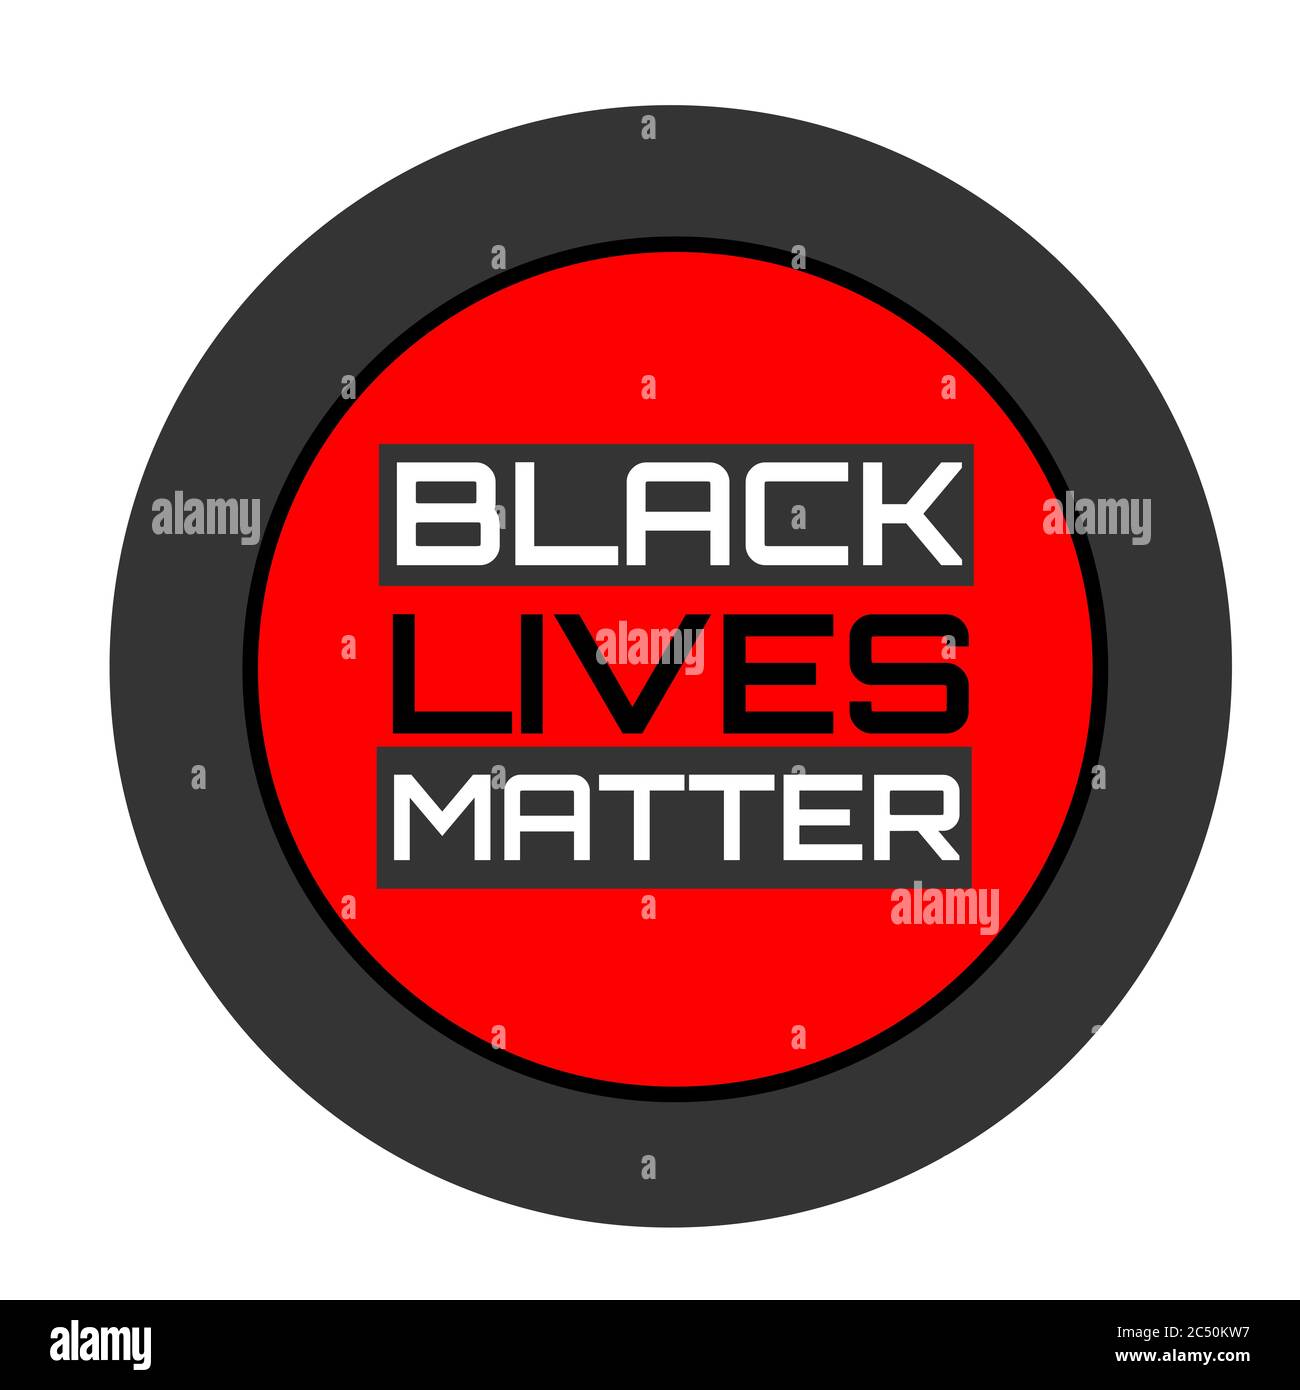 Le vite nere contano, non posso respirare. Banner di protesta sul diritto umano dei neri negli Stati Uniti. Le vite nere contano. America. Foto Stock